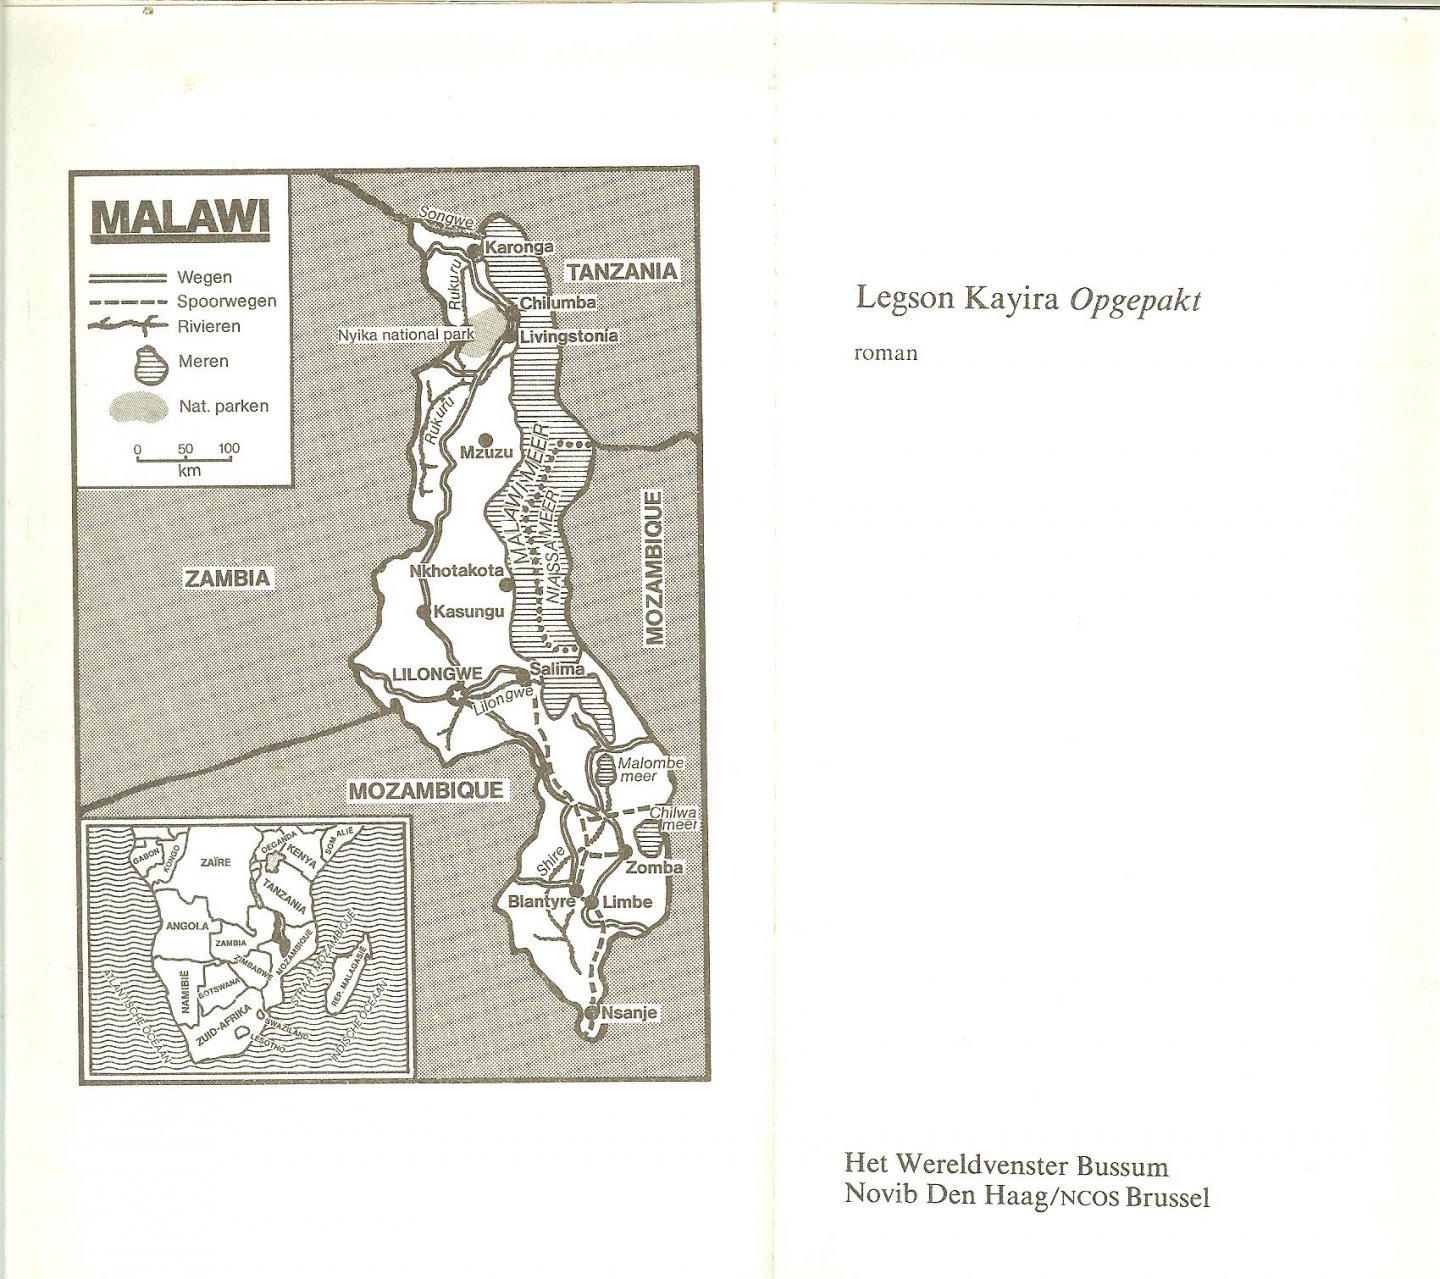 Kayira Legson  Uit het Engels vertaald door Richard-Nutbey, H.  Omslagillustratie typografie binnen werk Peter van Hugten - Opgepakt  Roman uit Malawi